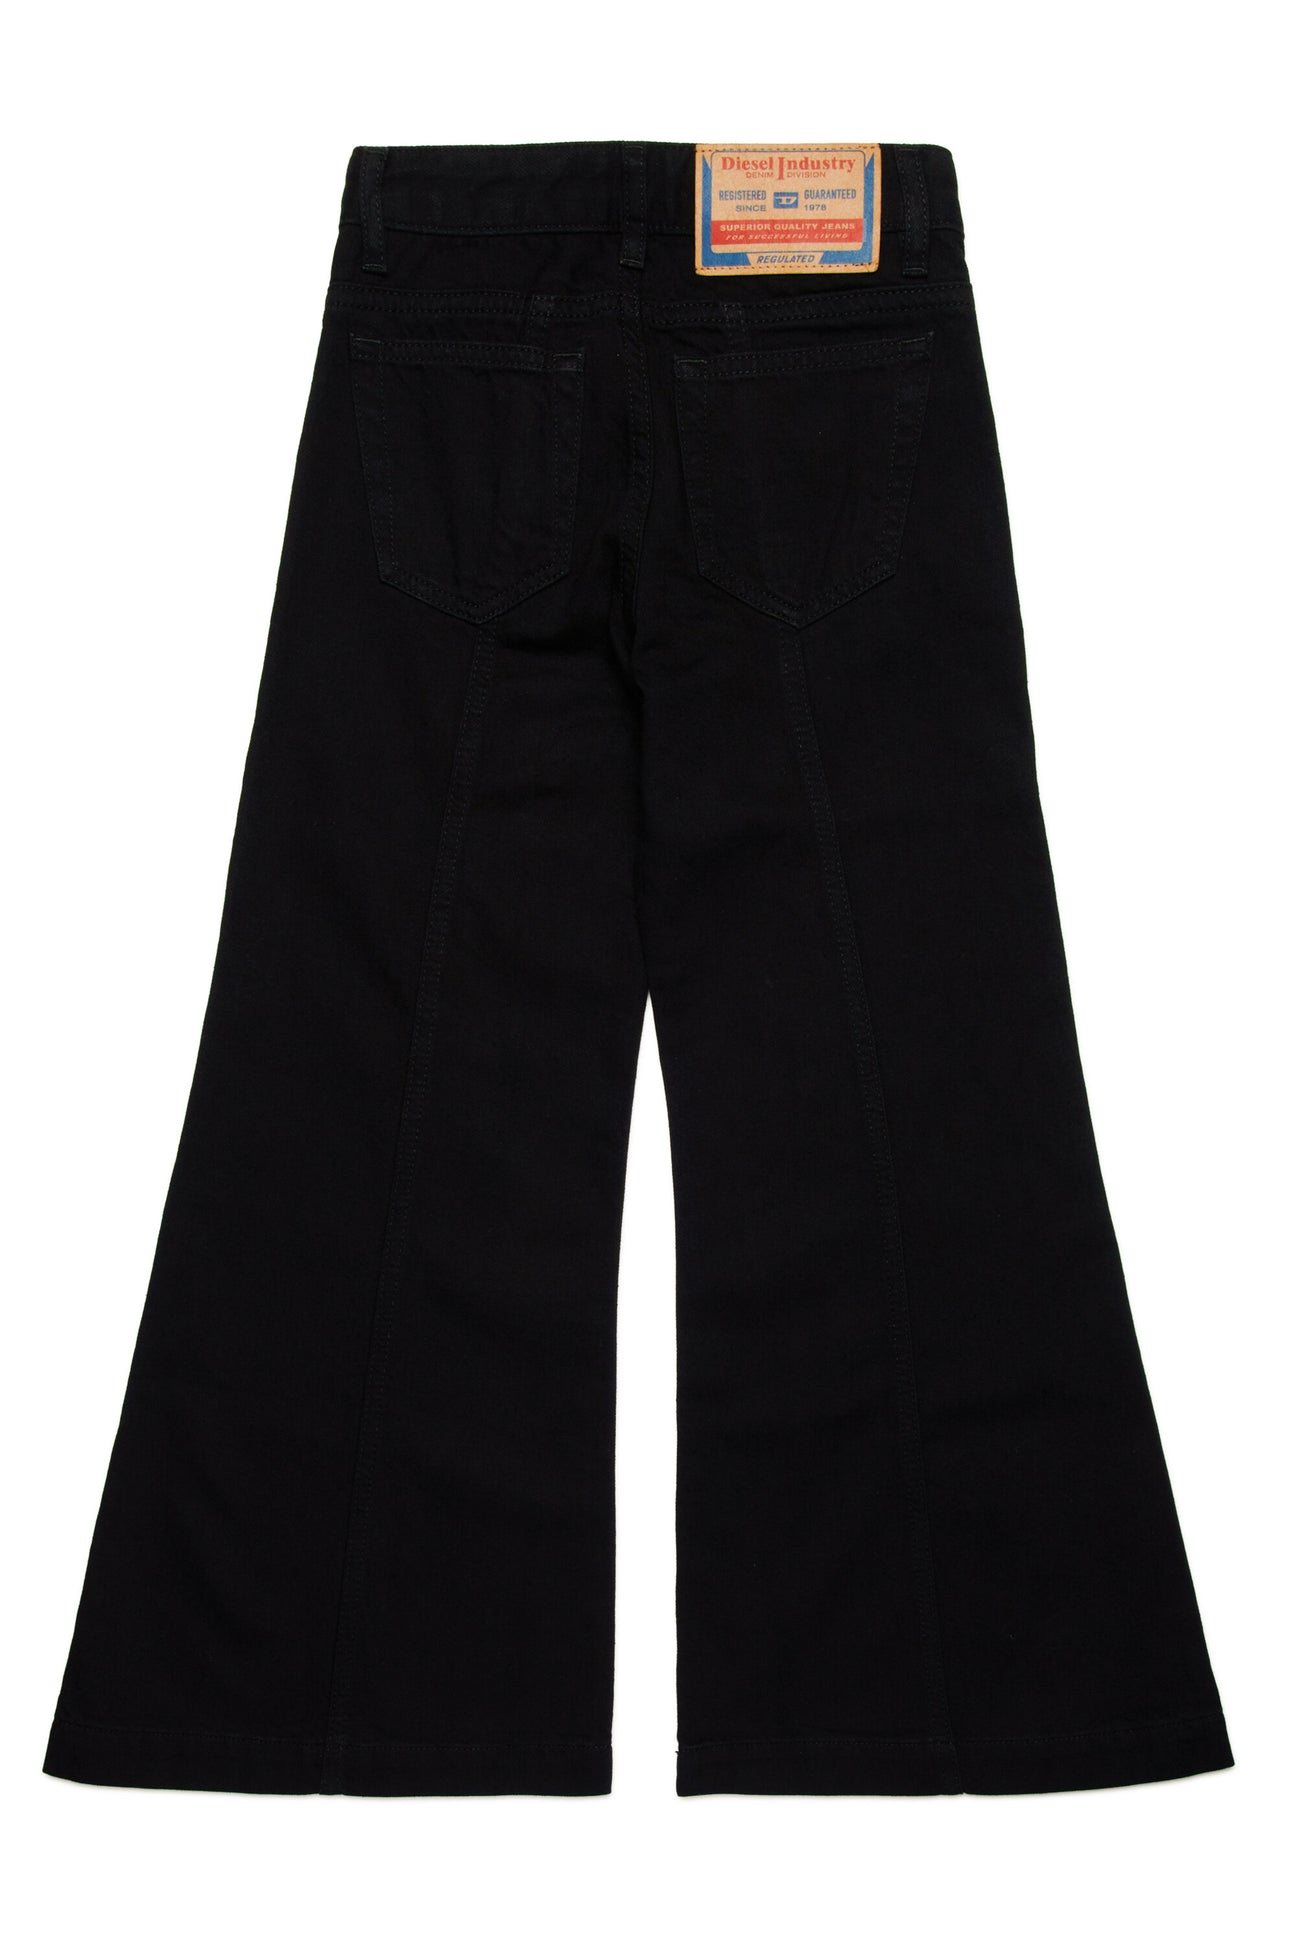 Jeans flare negros - D-Akii Jeans flare negros - D-Akii